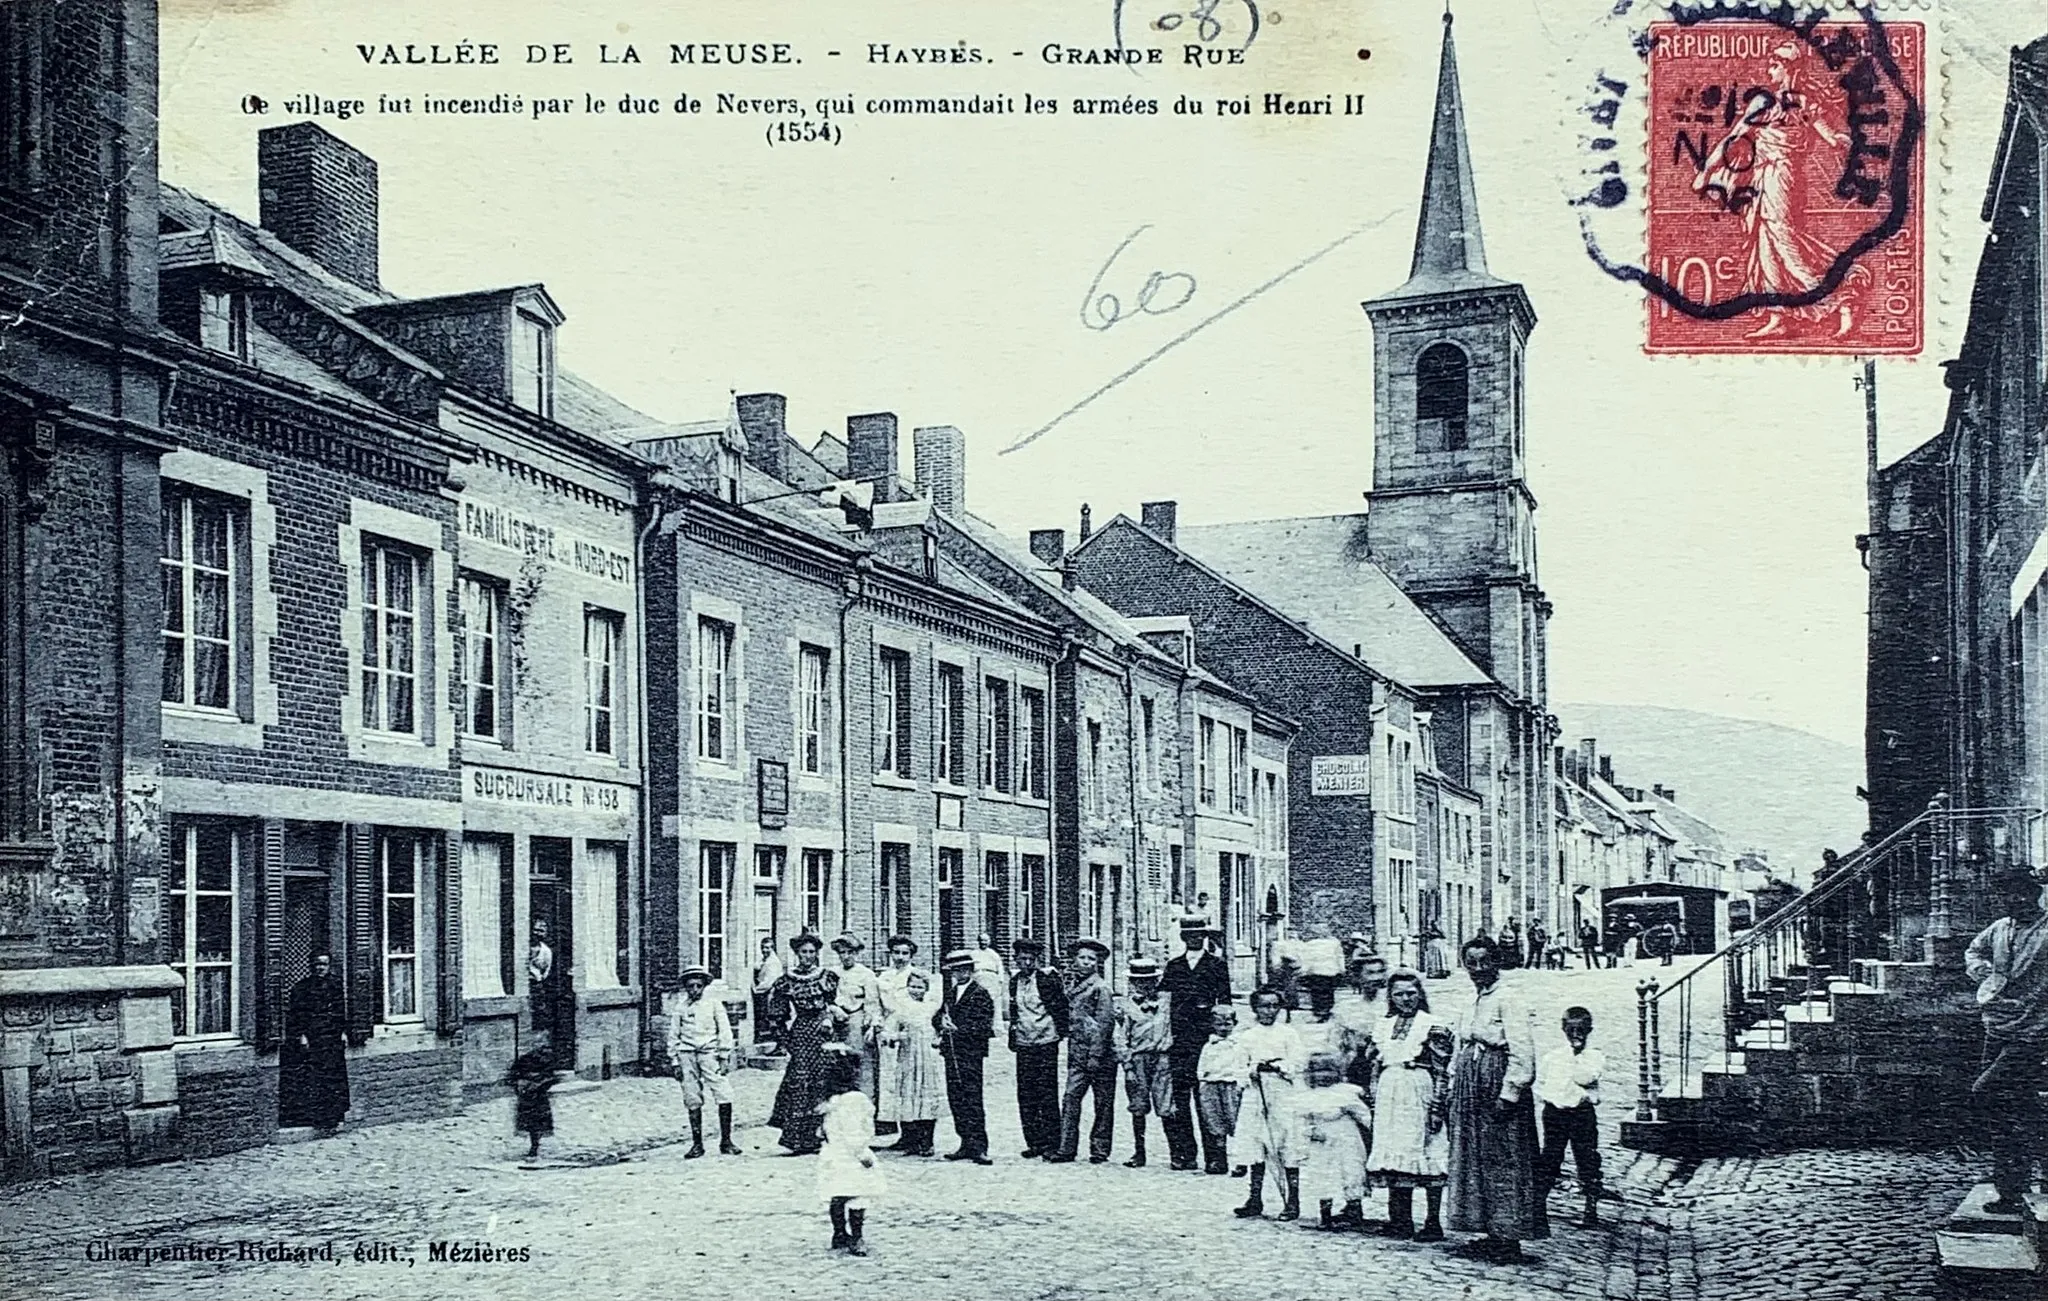 Photo showing: Grand rue de Haybes avant la 1ère guerre mondiale avec la présence de l’hôtel de ville (bord gauche de la photo) et de l’église avant sa destruction. L’Hotel de Ville actuel est situé à l’emplacement de l’ancienne église.